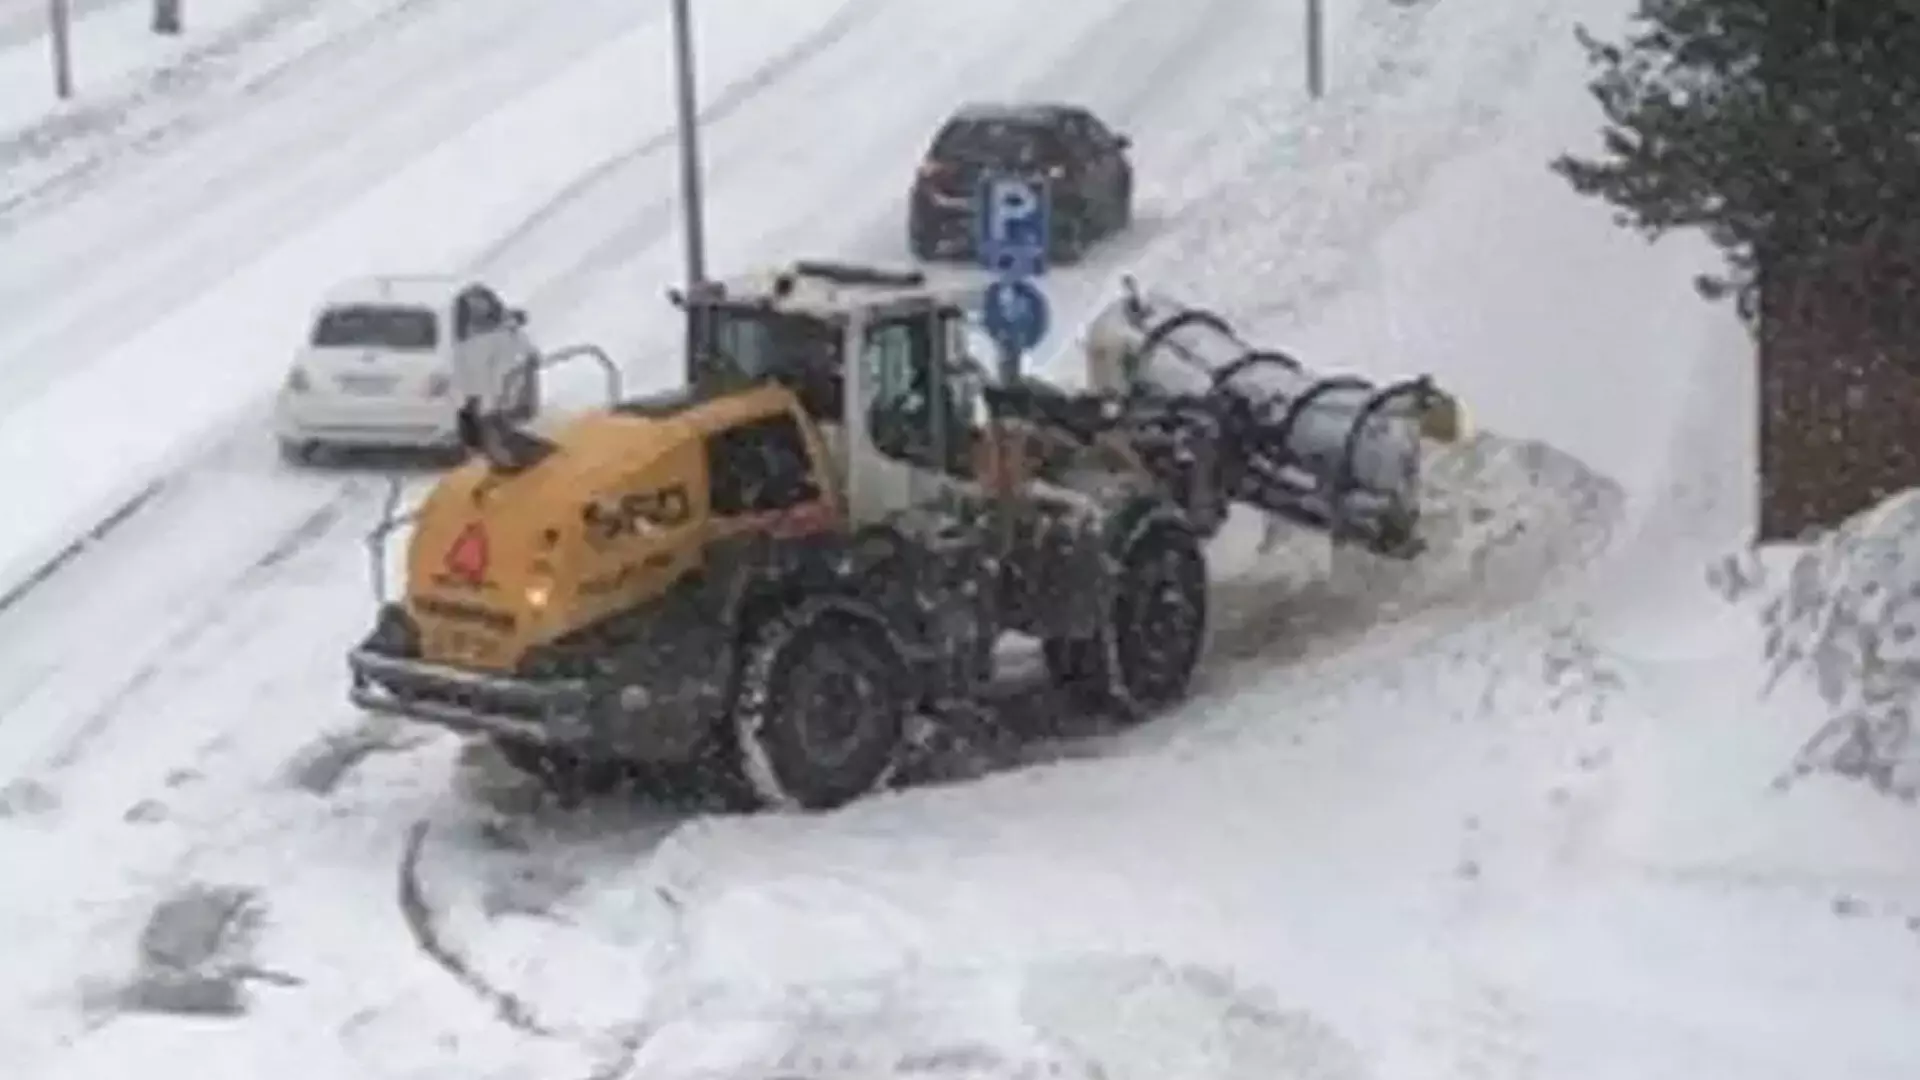 फ़िनलैंड की राजधानी हेलसिंकी में बर्फबारी से यातायात बाधित